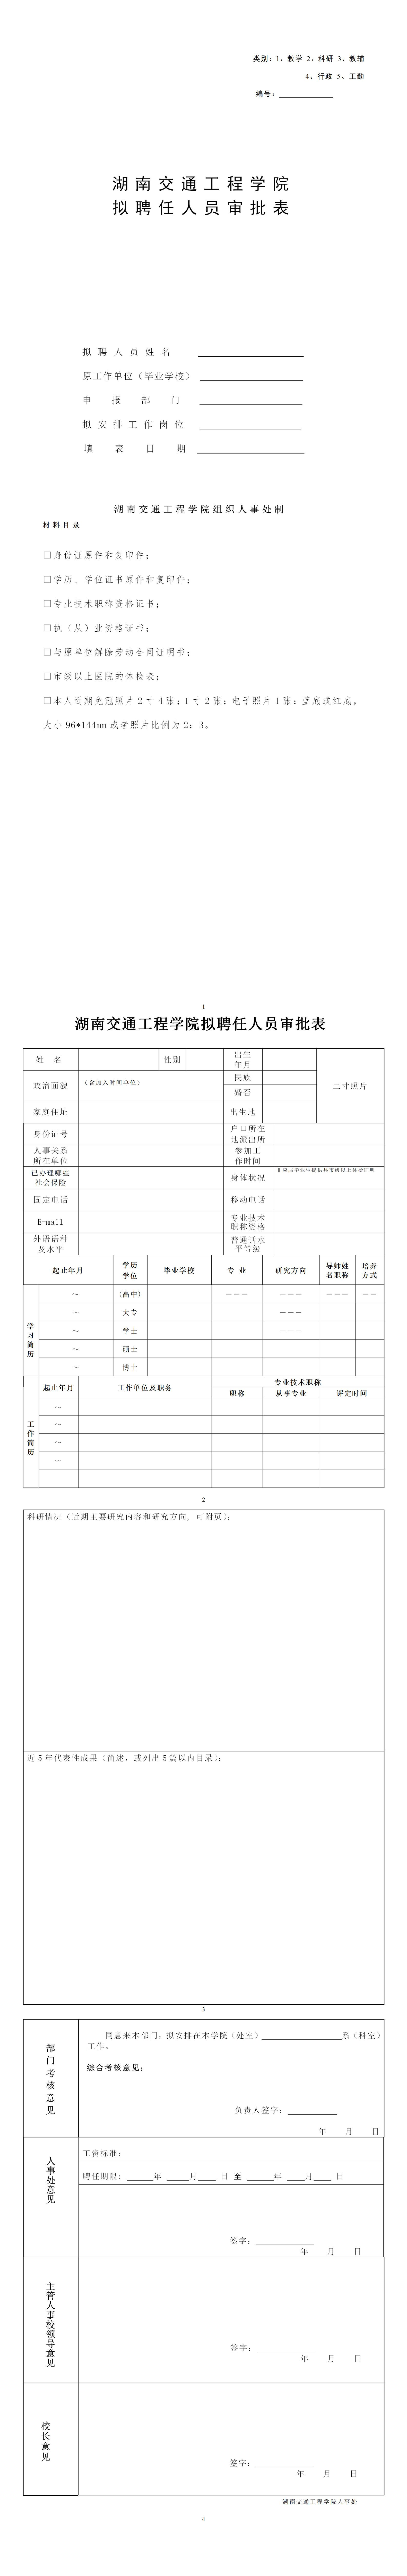 附件1 湖南交通工程学院拟聘任人员审批表.jpg